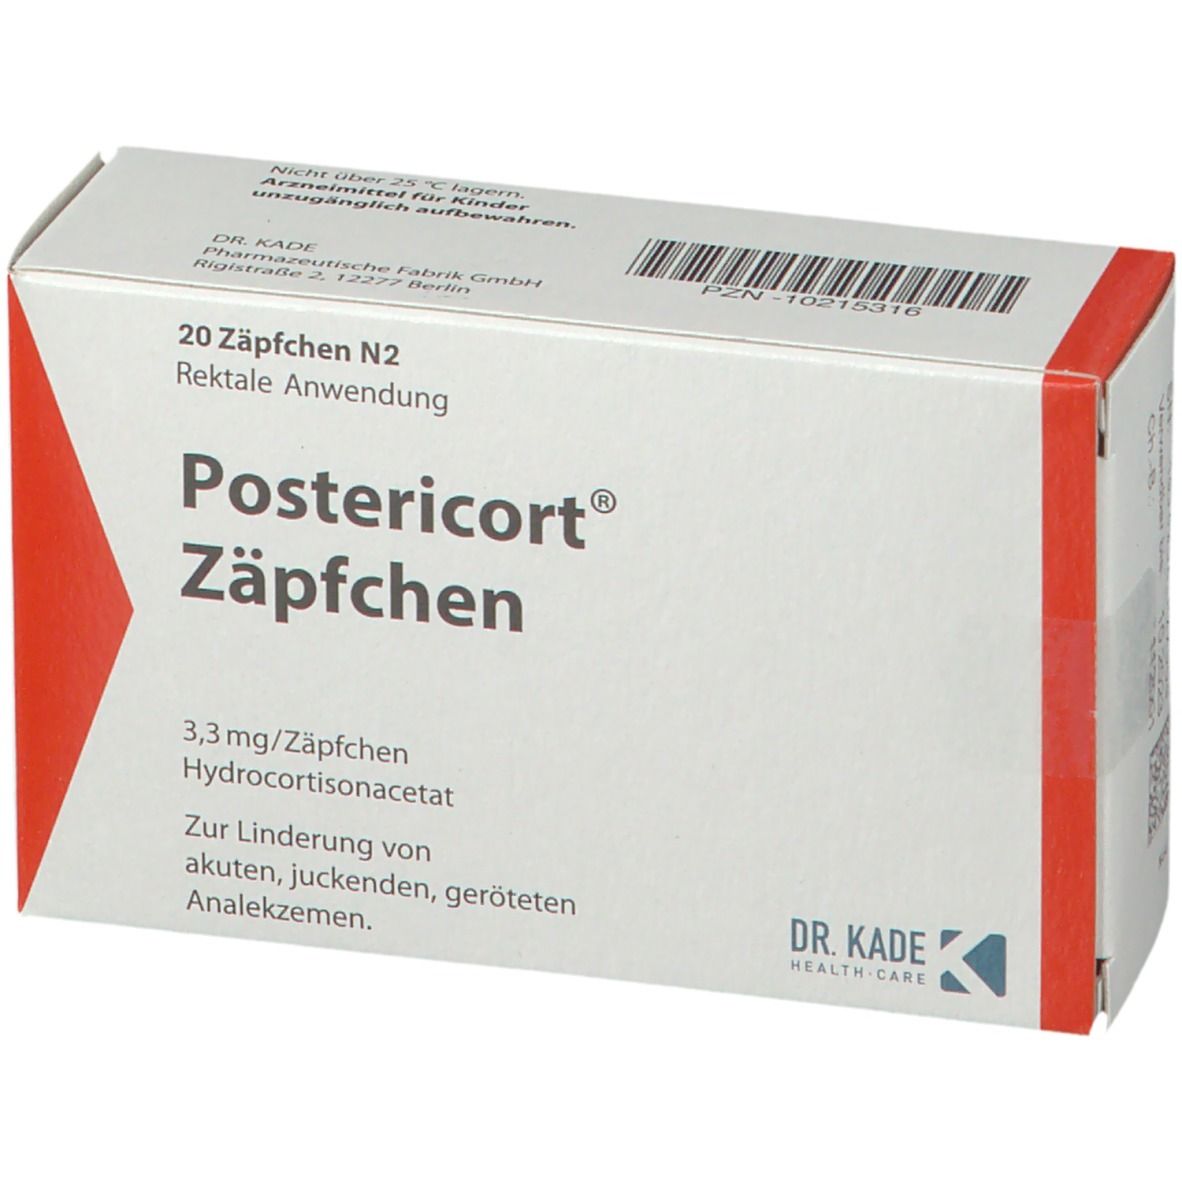 Postericort® Zäpfchen